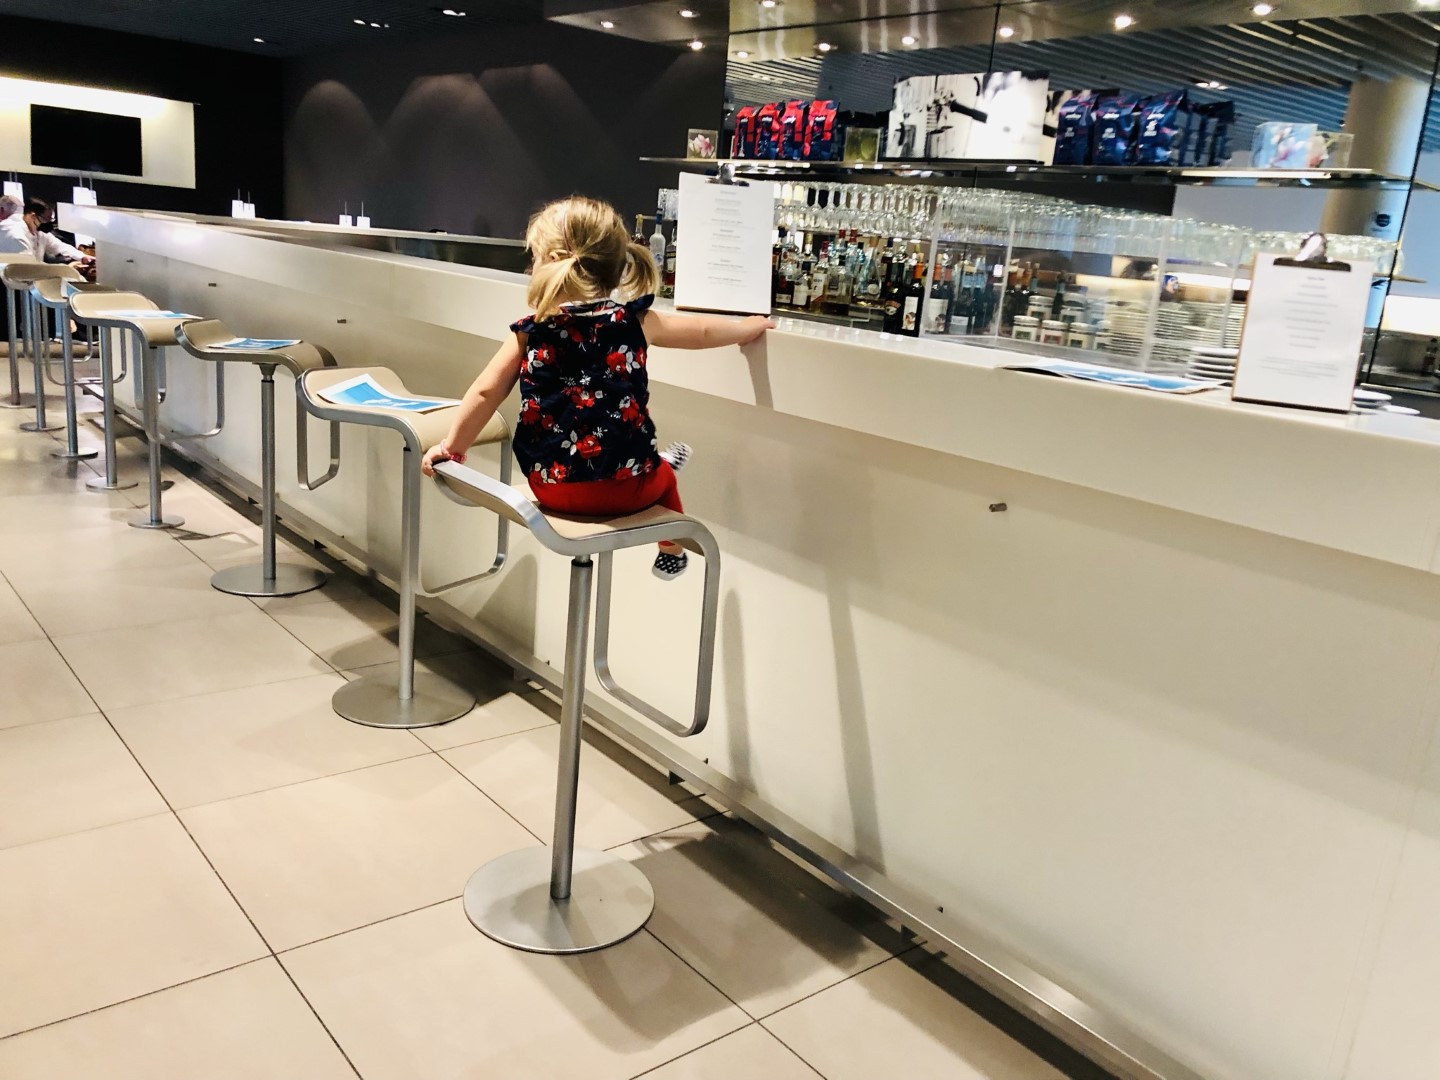 Kinder-Check: Lufthansa Senator Lounge München Flughafen Non-Schengen während Corona 2021/2022